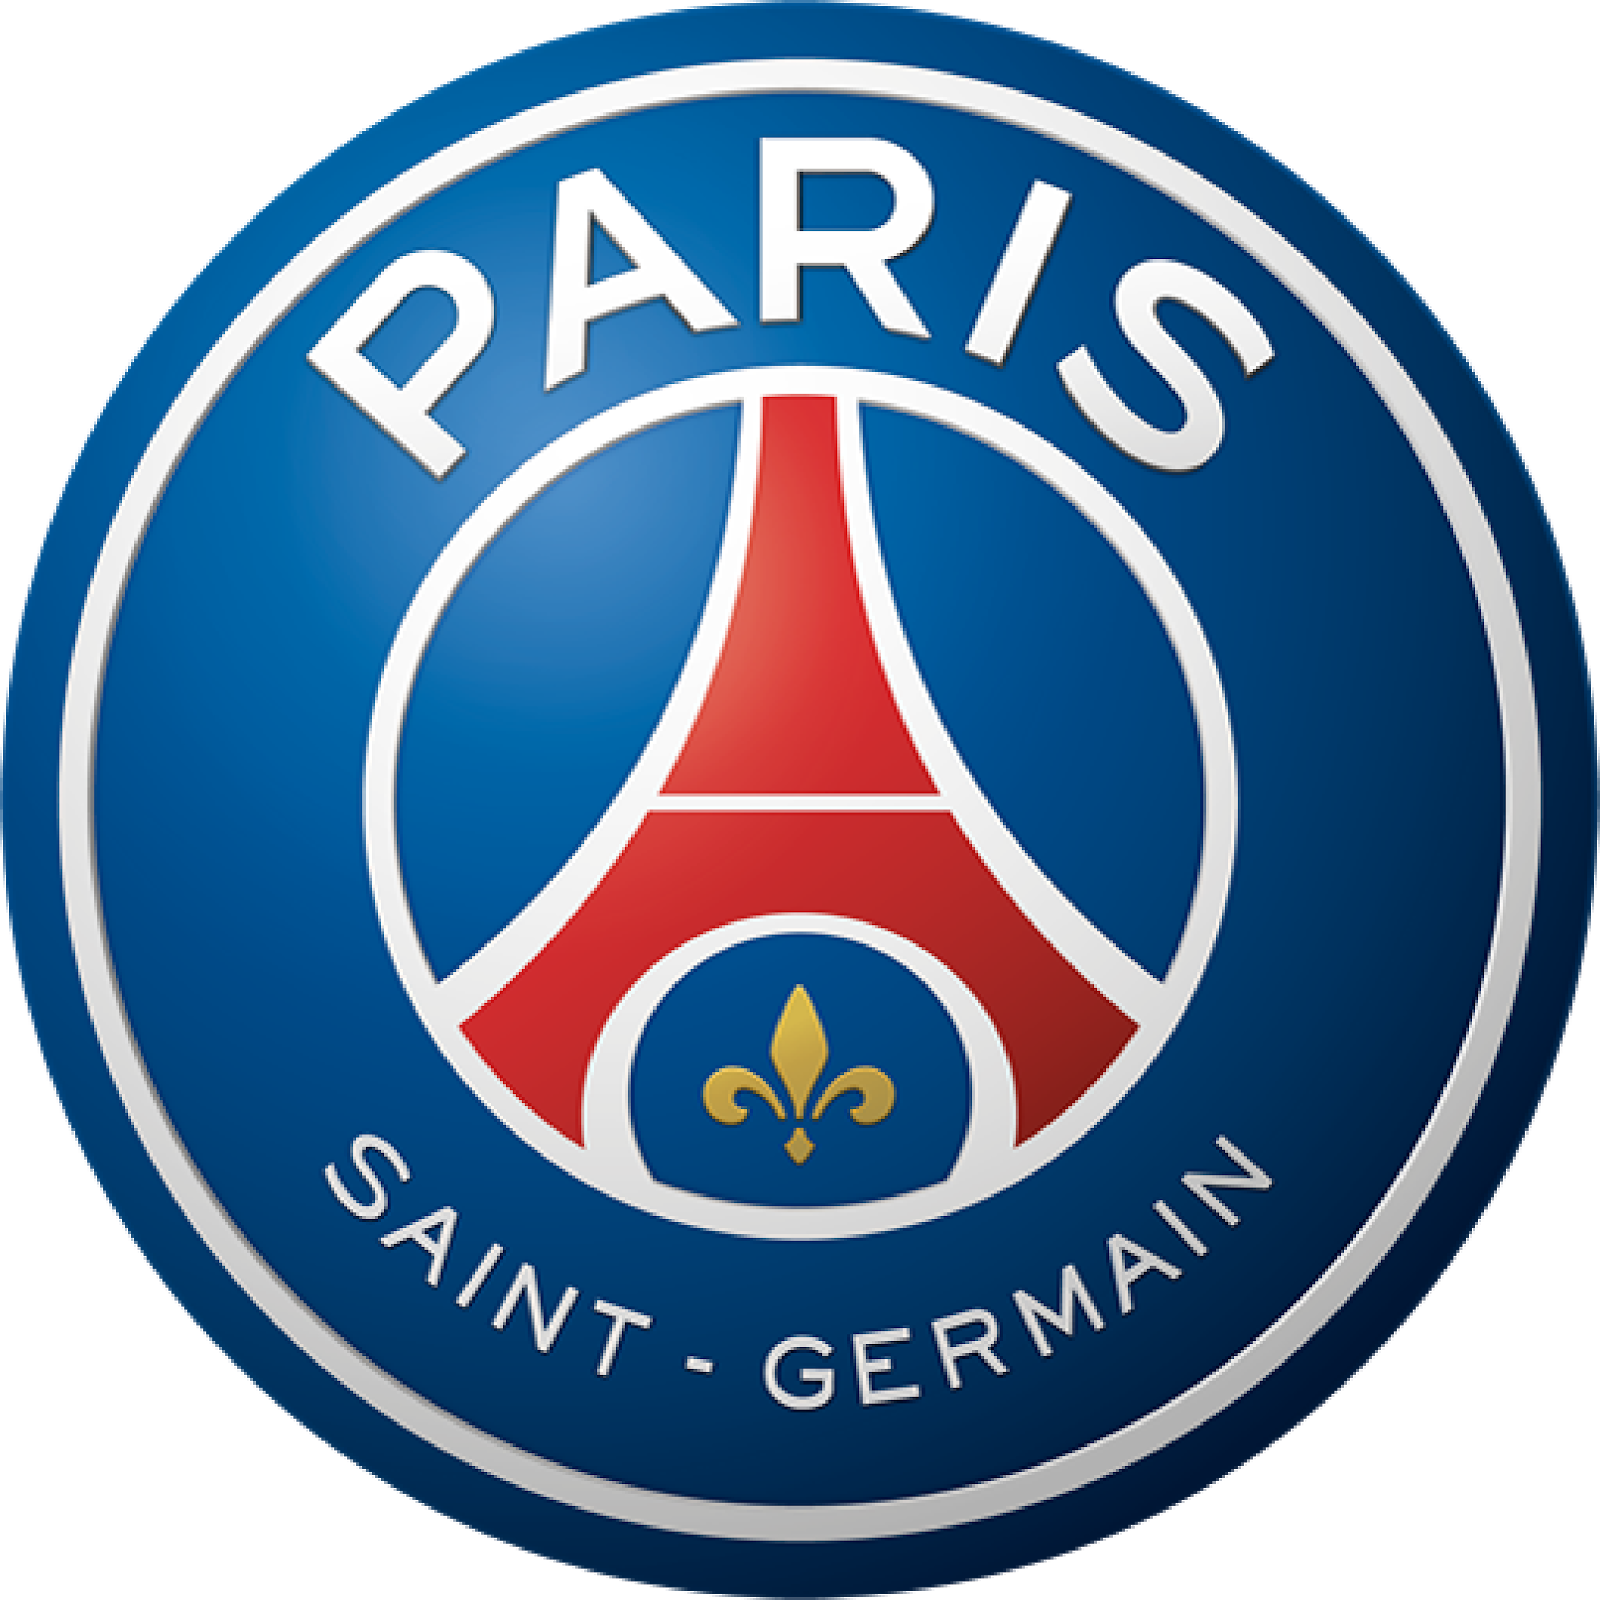 Download Logo Paris Saint Germain Svg Eps Png Psd Ai El Fonts Vectors